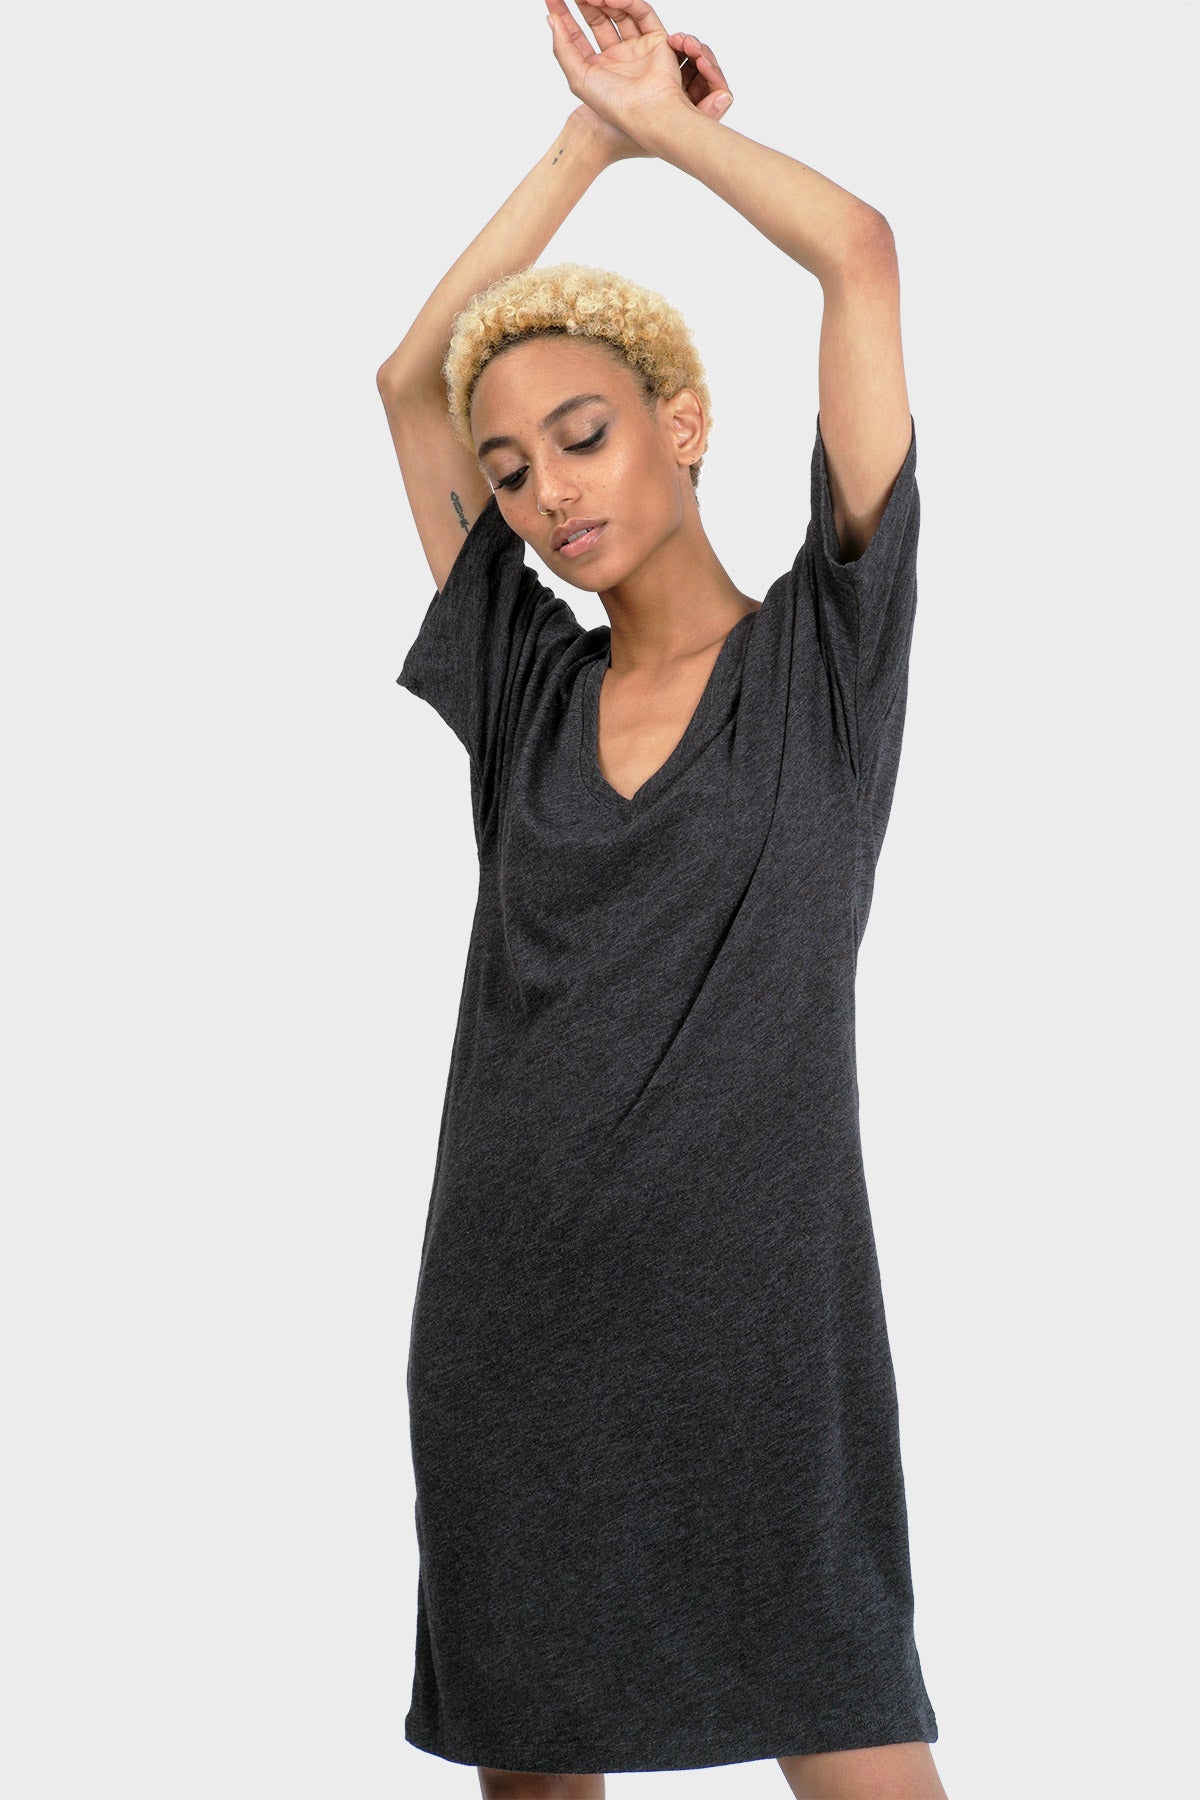 Silky T Shirt Dress Flash Sales, 59 ...